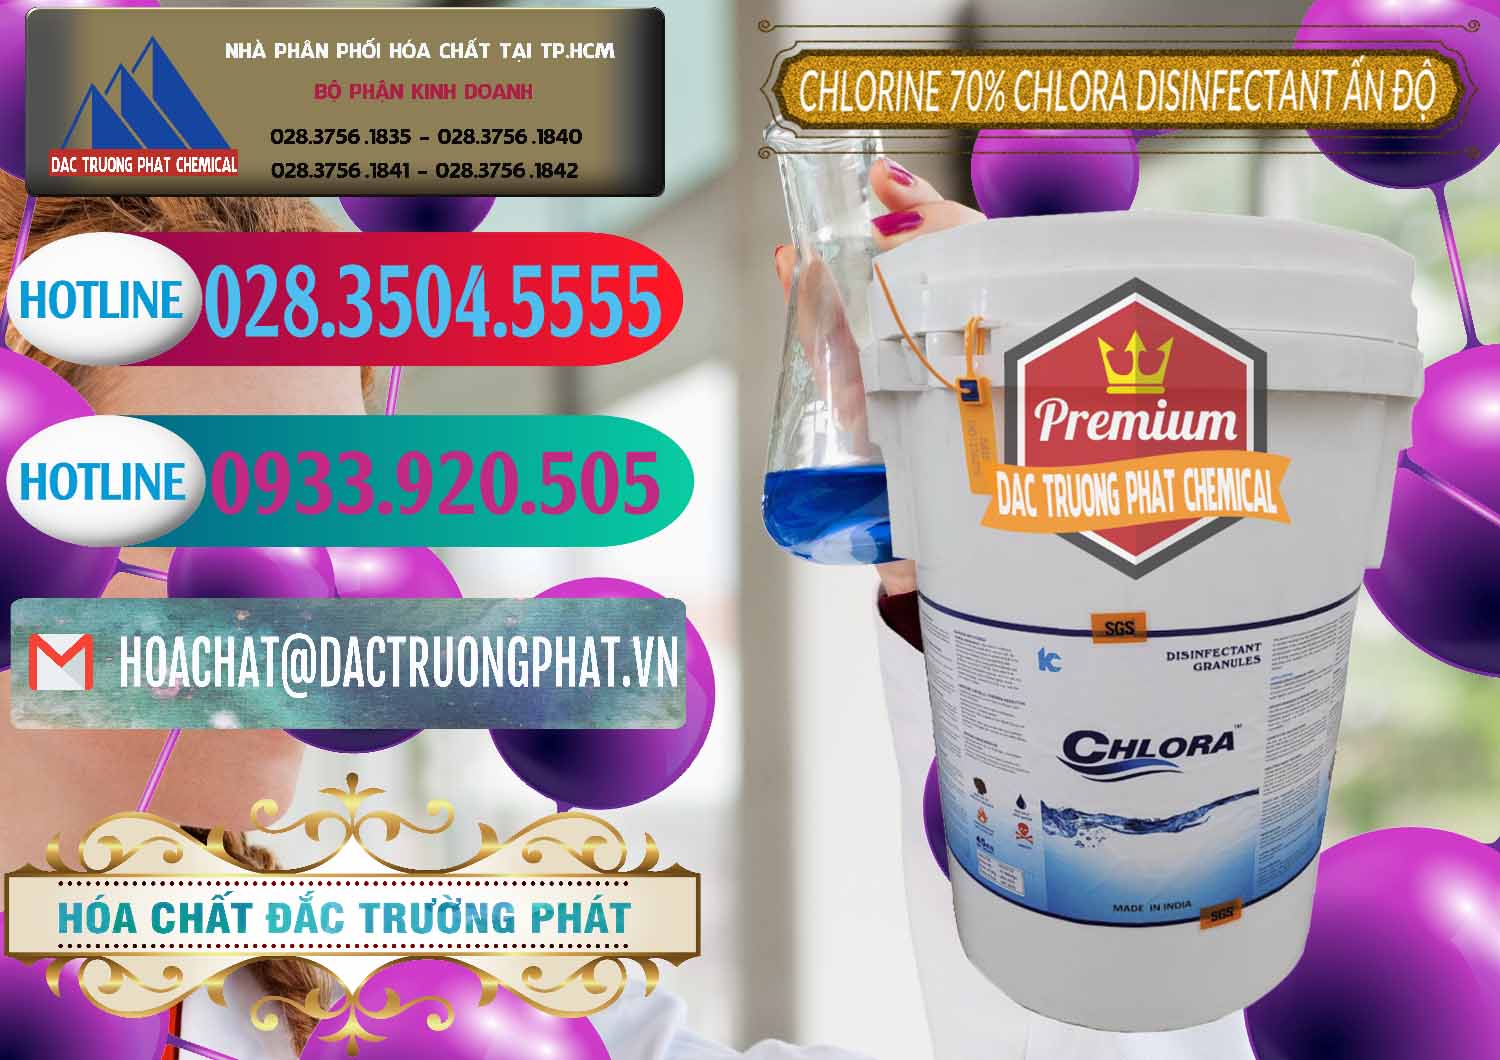 Cty bán và cung ứng Chlorine – Clorin 70% Chlora Disinfectant Ấn Độ India - 0213 - Nơi cung cấp _ phân phối hóa chất tại TP.HCM - truongphat.vn